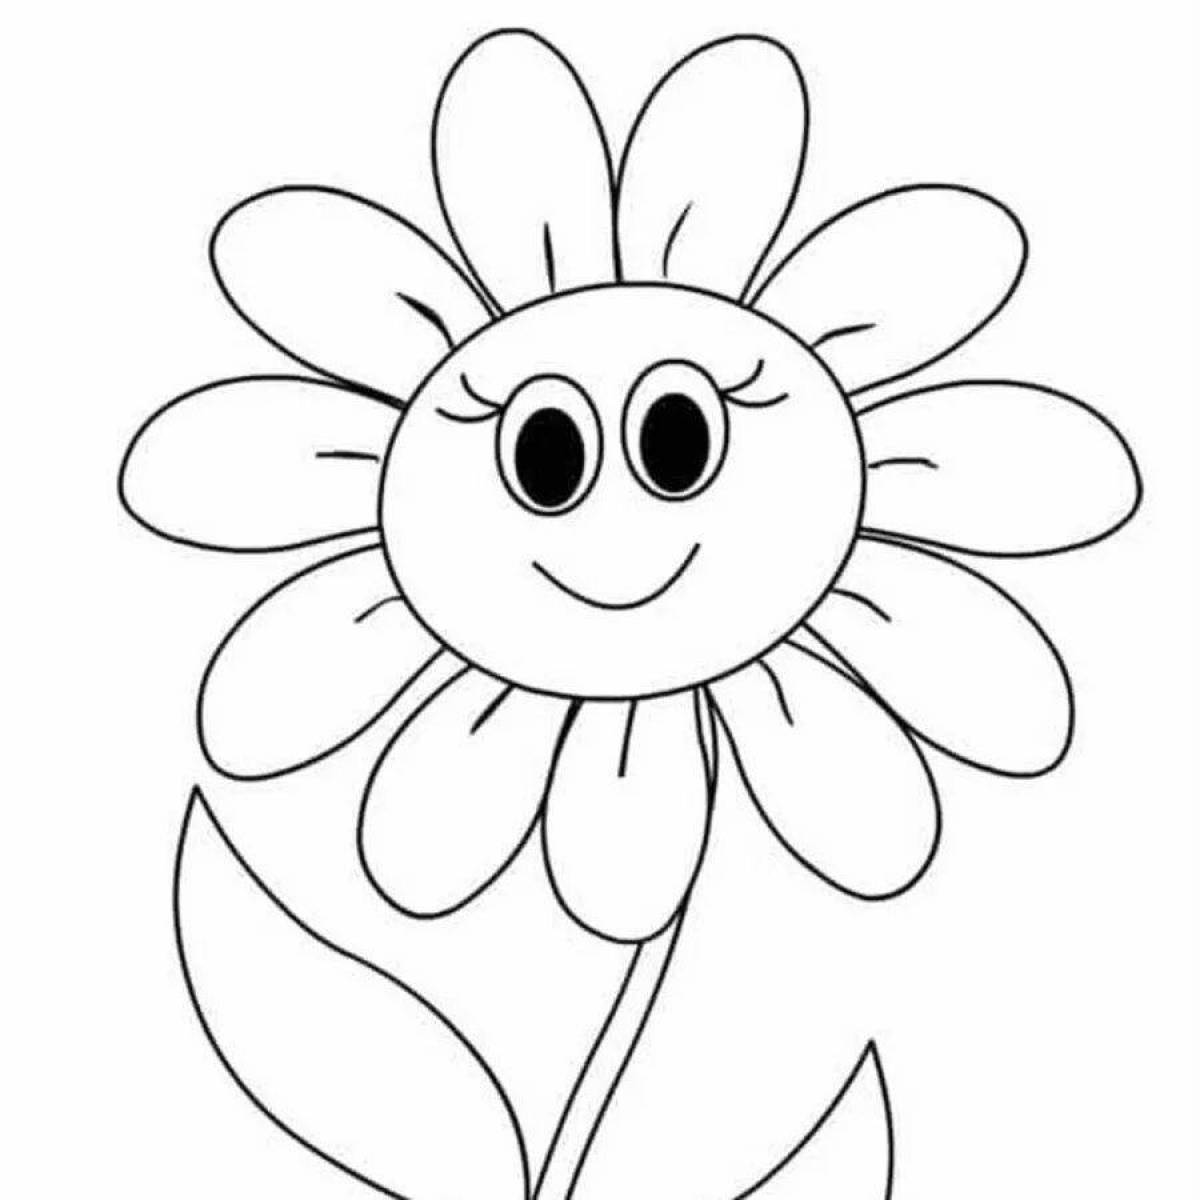 Сладкий цветок раскраски для детей 4-5 лет